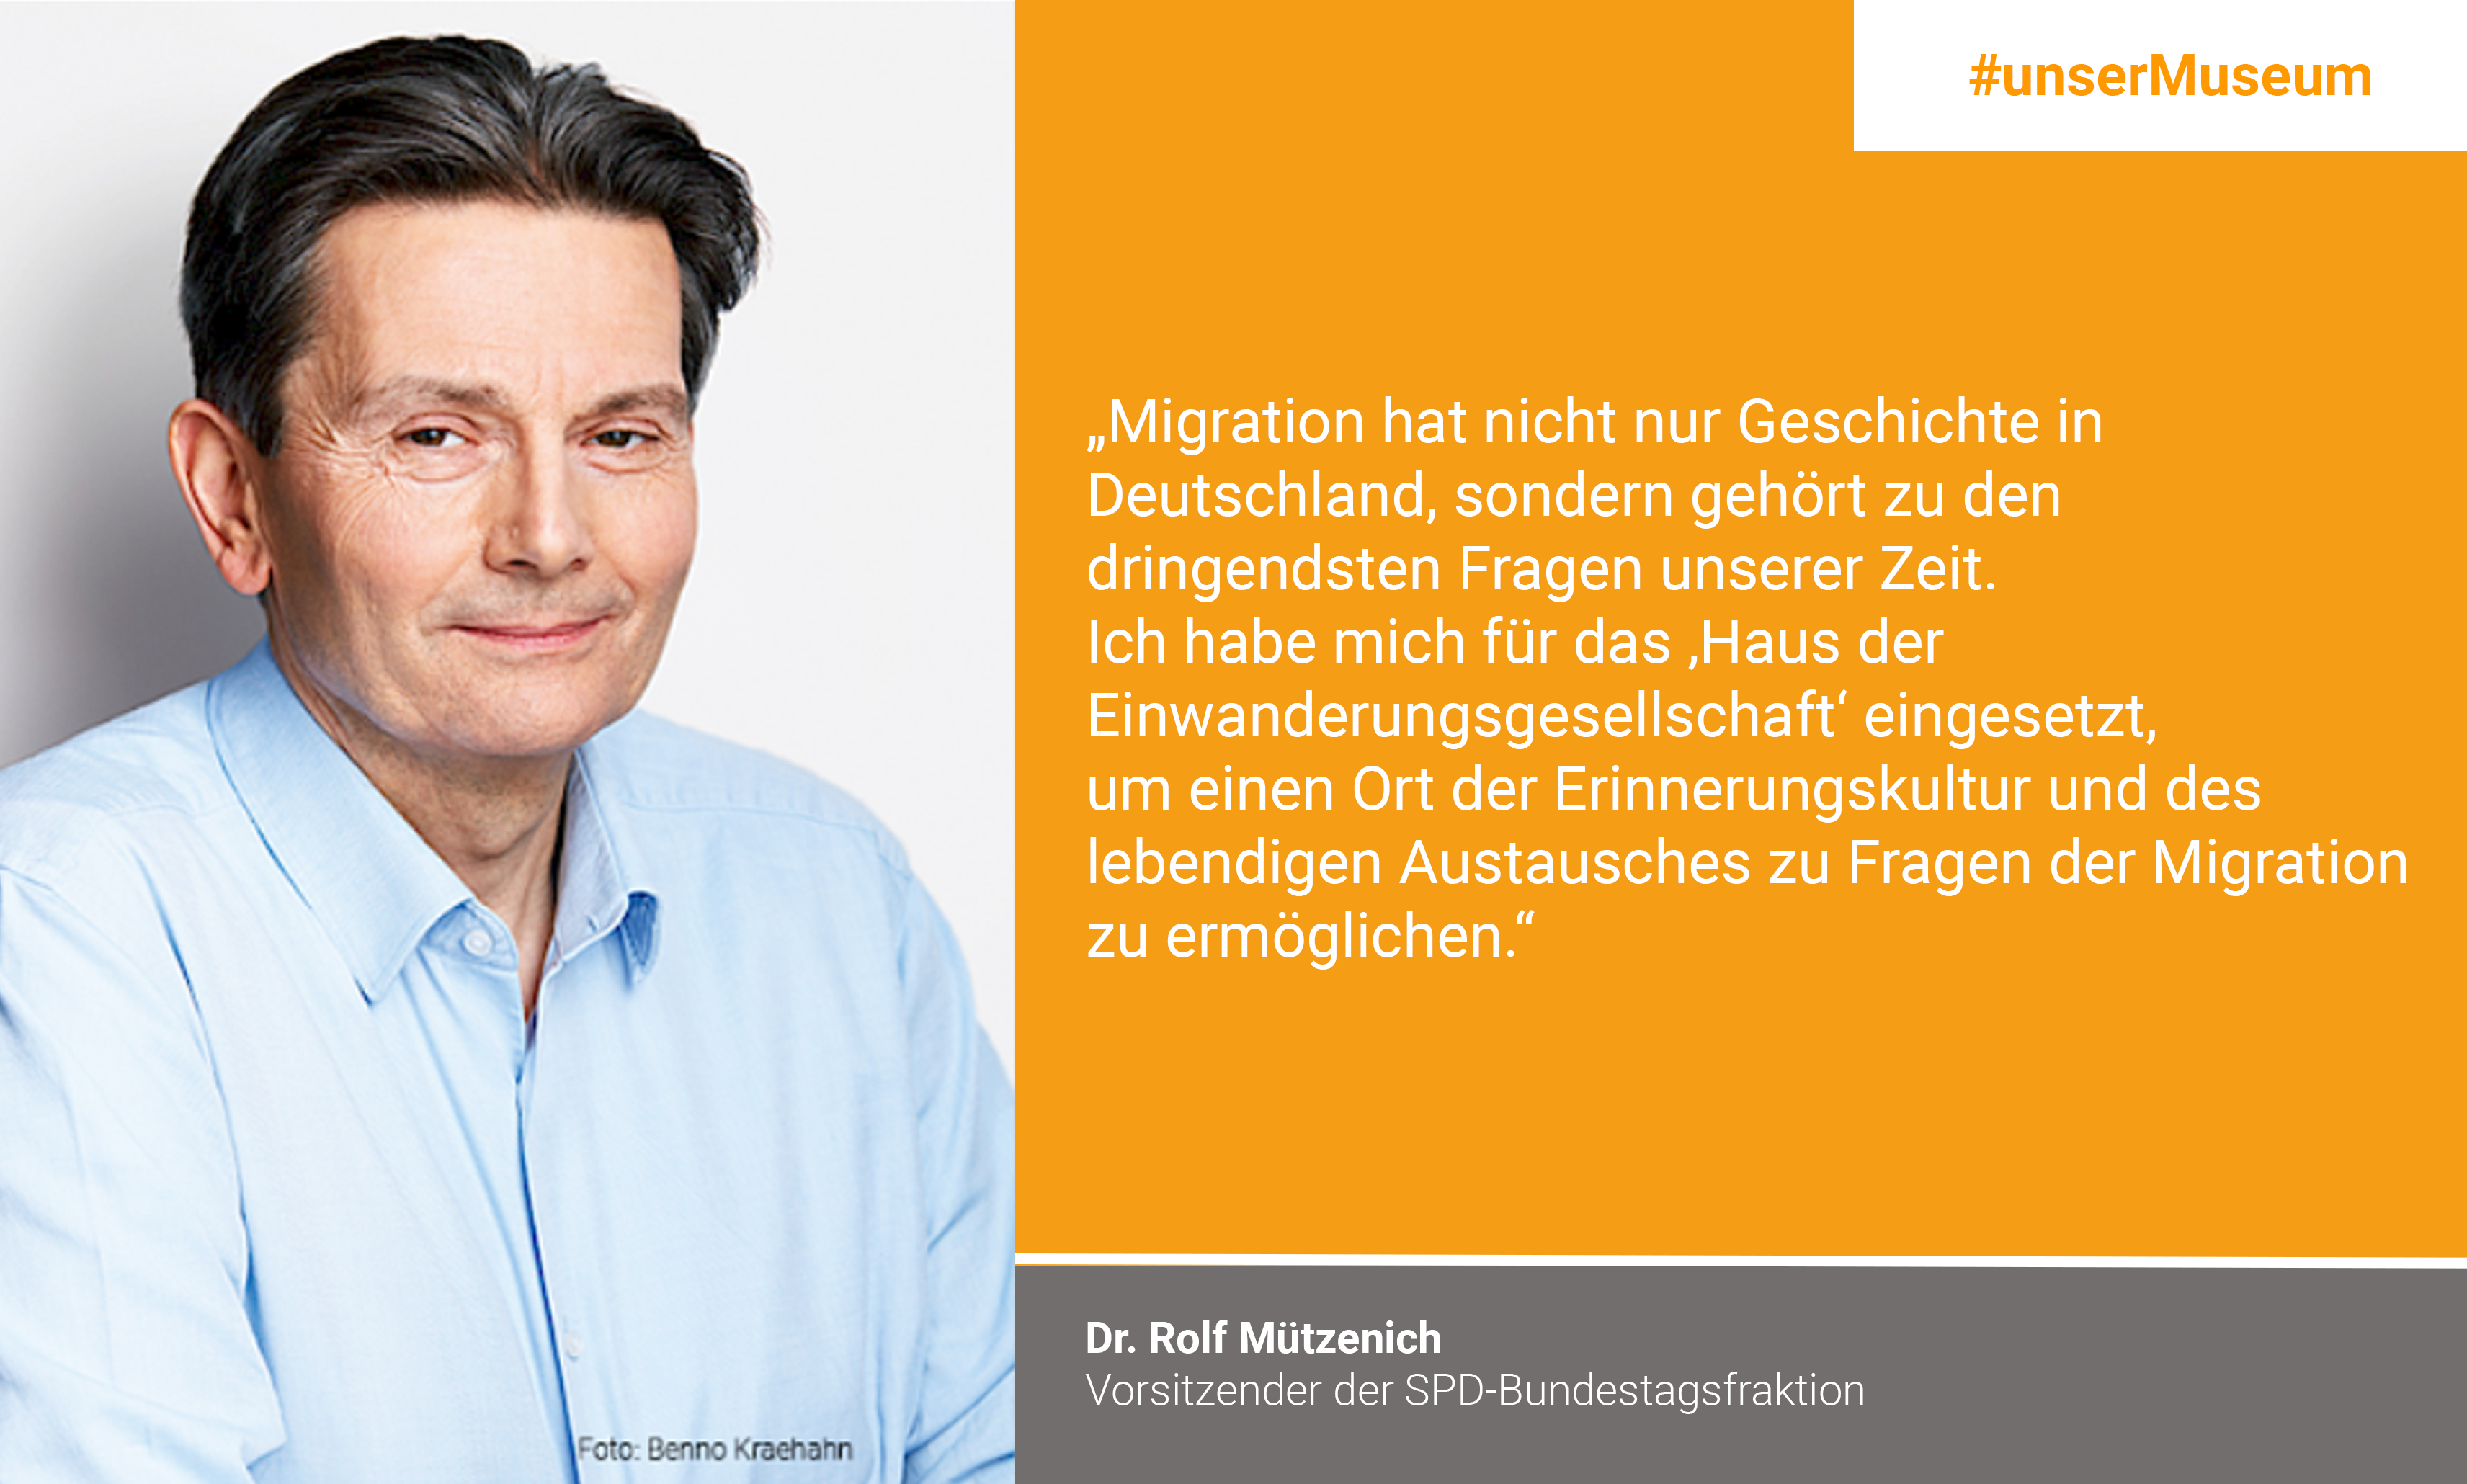 Dr. Rolf Mützenich, Vorsitzender der SPD-Bundestagsfraktion: "Migration hat nicht nur Geschichte in Deutschland, sondern gehört zu den dringenden Fragen unserer Zeit. Ich habe mich für das „Haus der Einwanderungsgesellschaft“ eingesetzt, um einen Ort der Erinnerungskultur und des lebendigen Austausches zu Fragen der Migration zu ermöglichen."